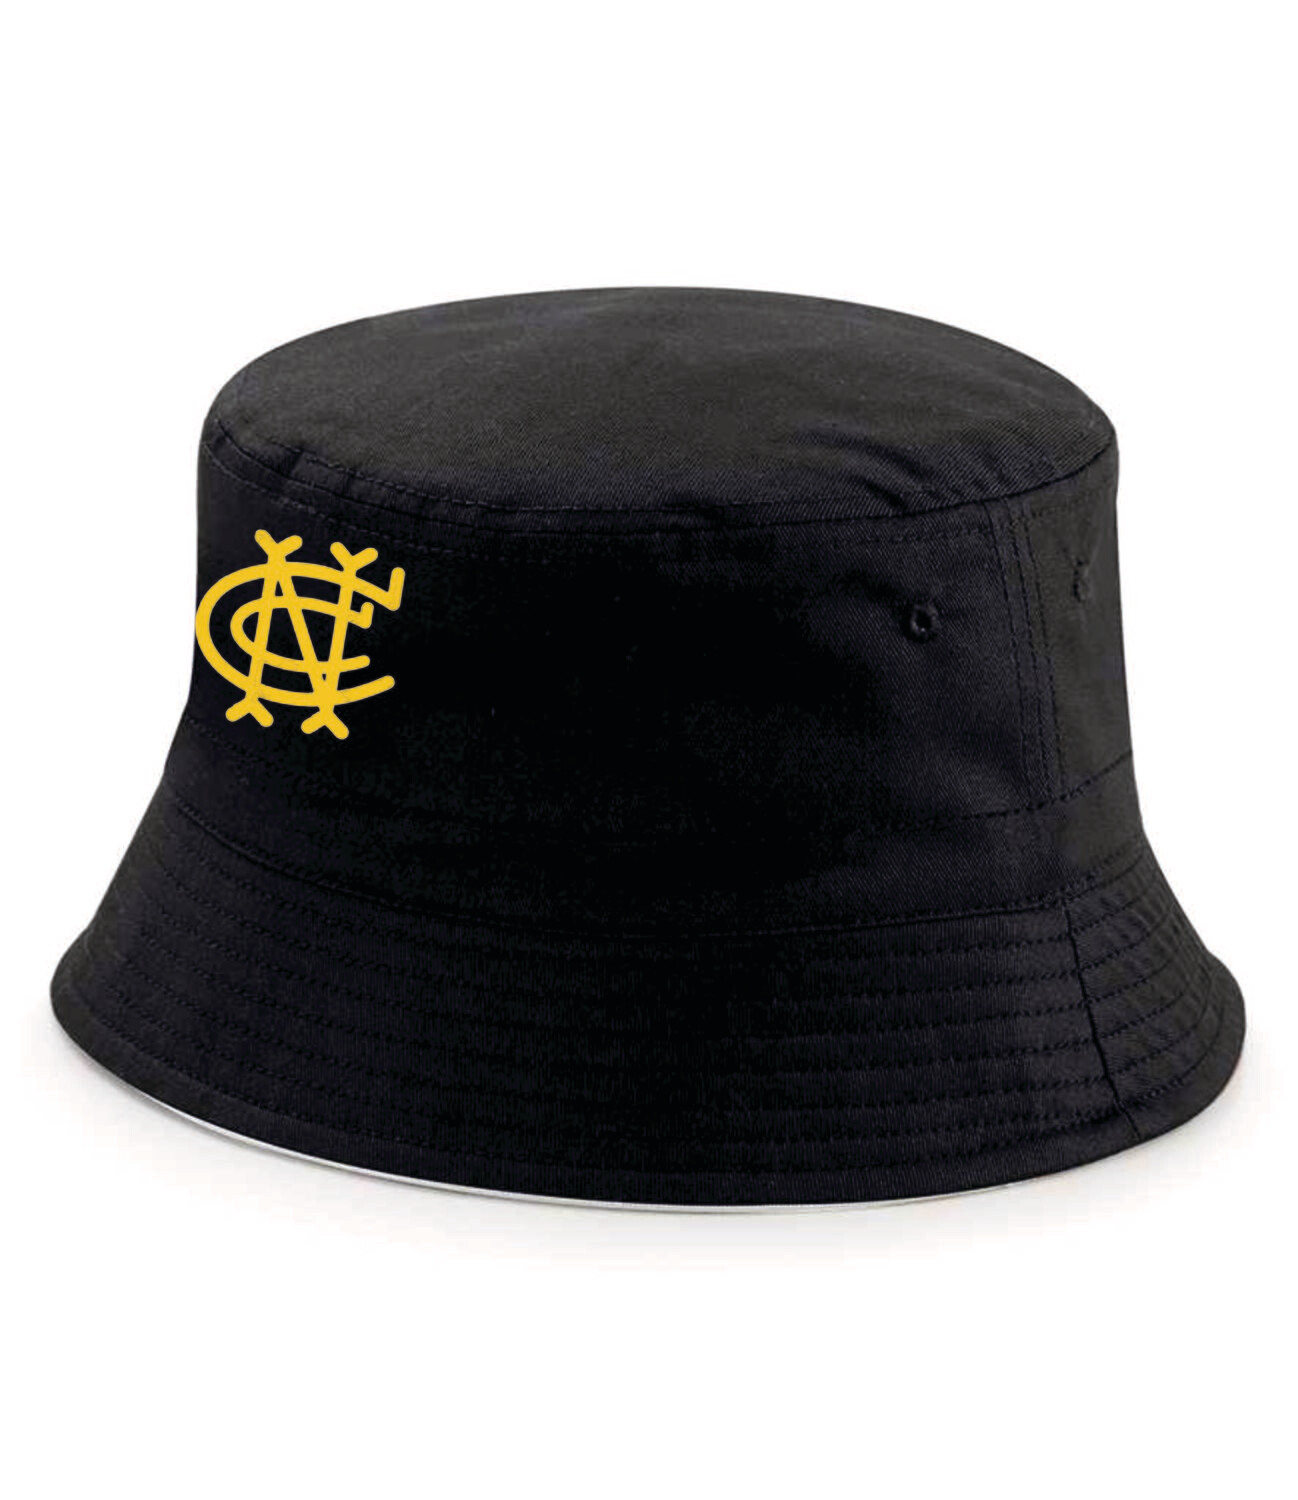 Newport Black Bucket Hat